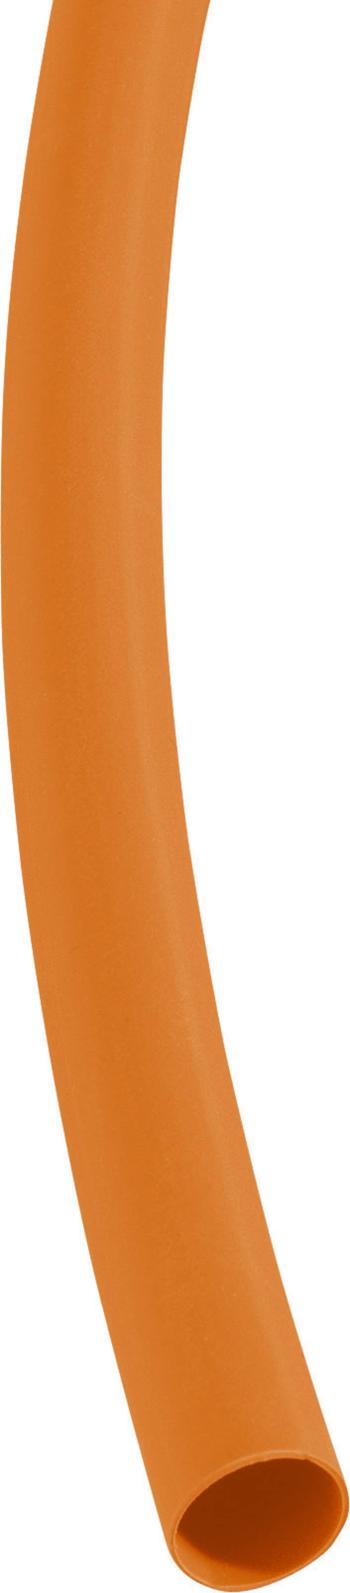 DSG Canusa 3290060203 zmršťovacia bužírka bez lepidla oranžová 6.40 mm 2 mm Pomer zmrštenia:3:1 metrový tovar